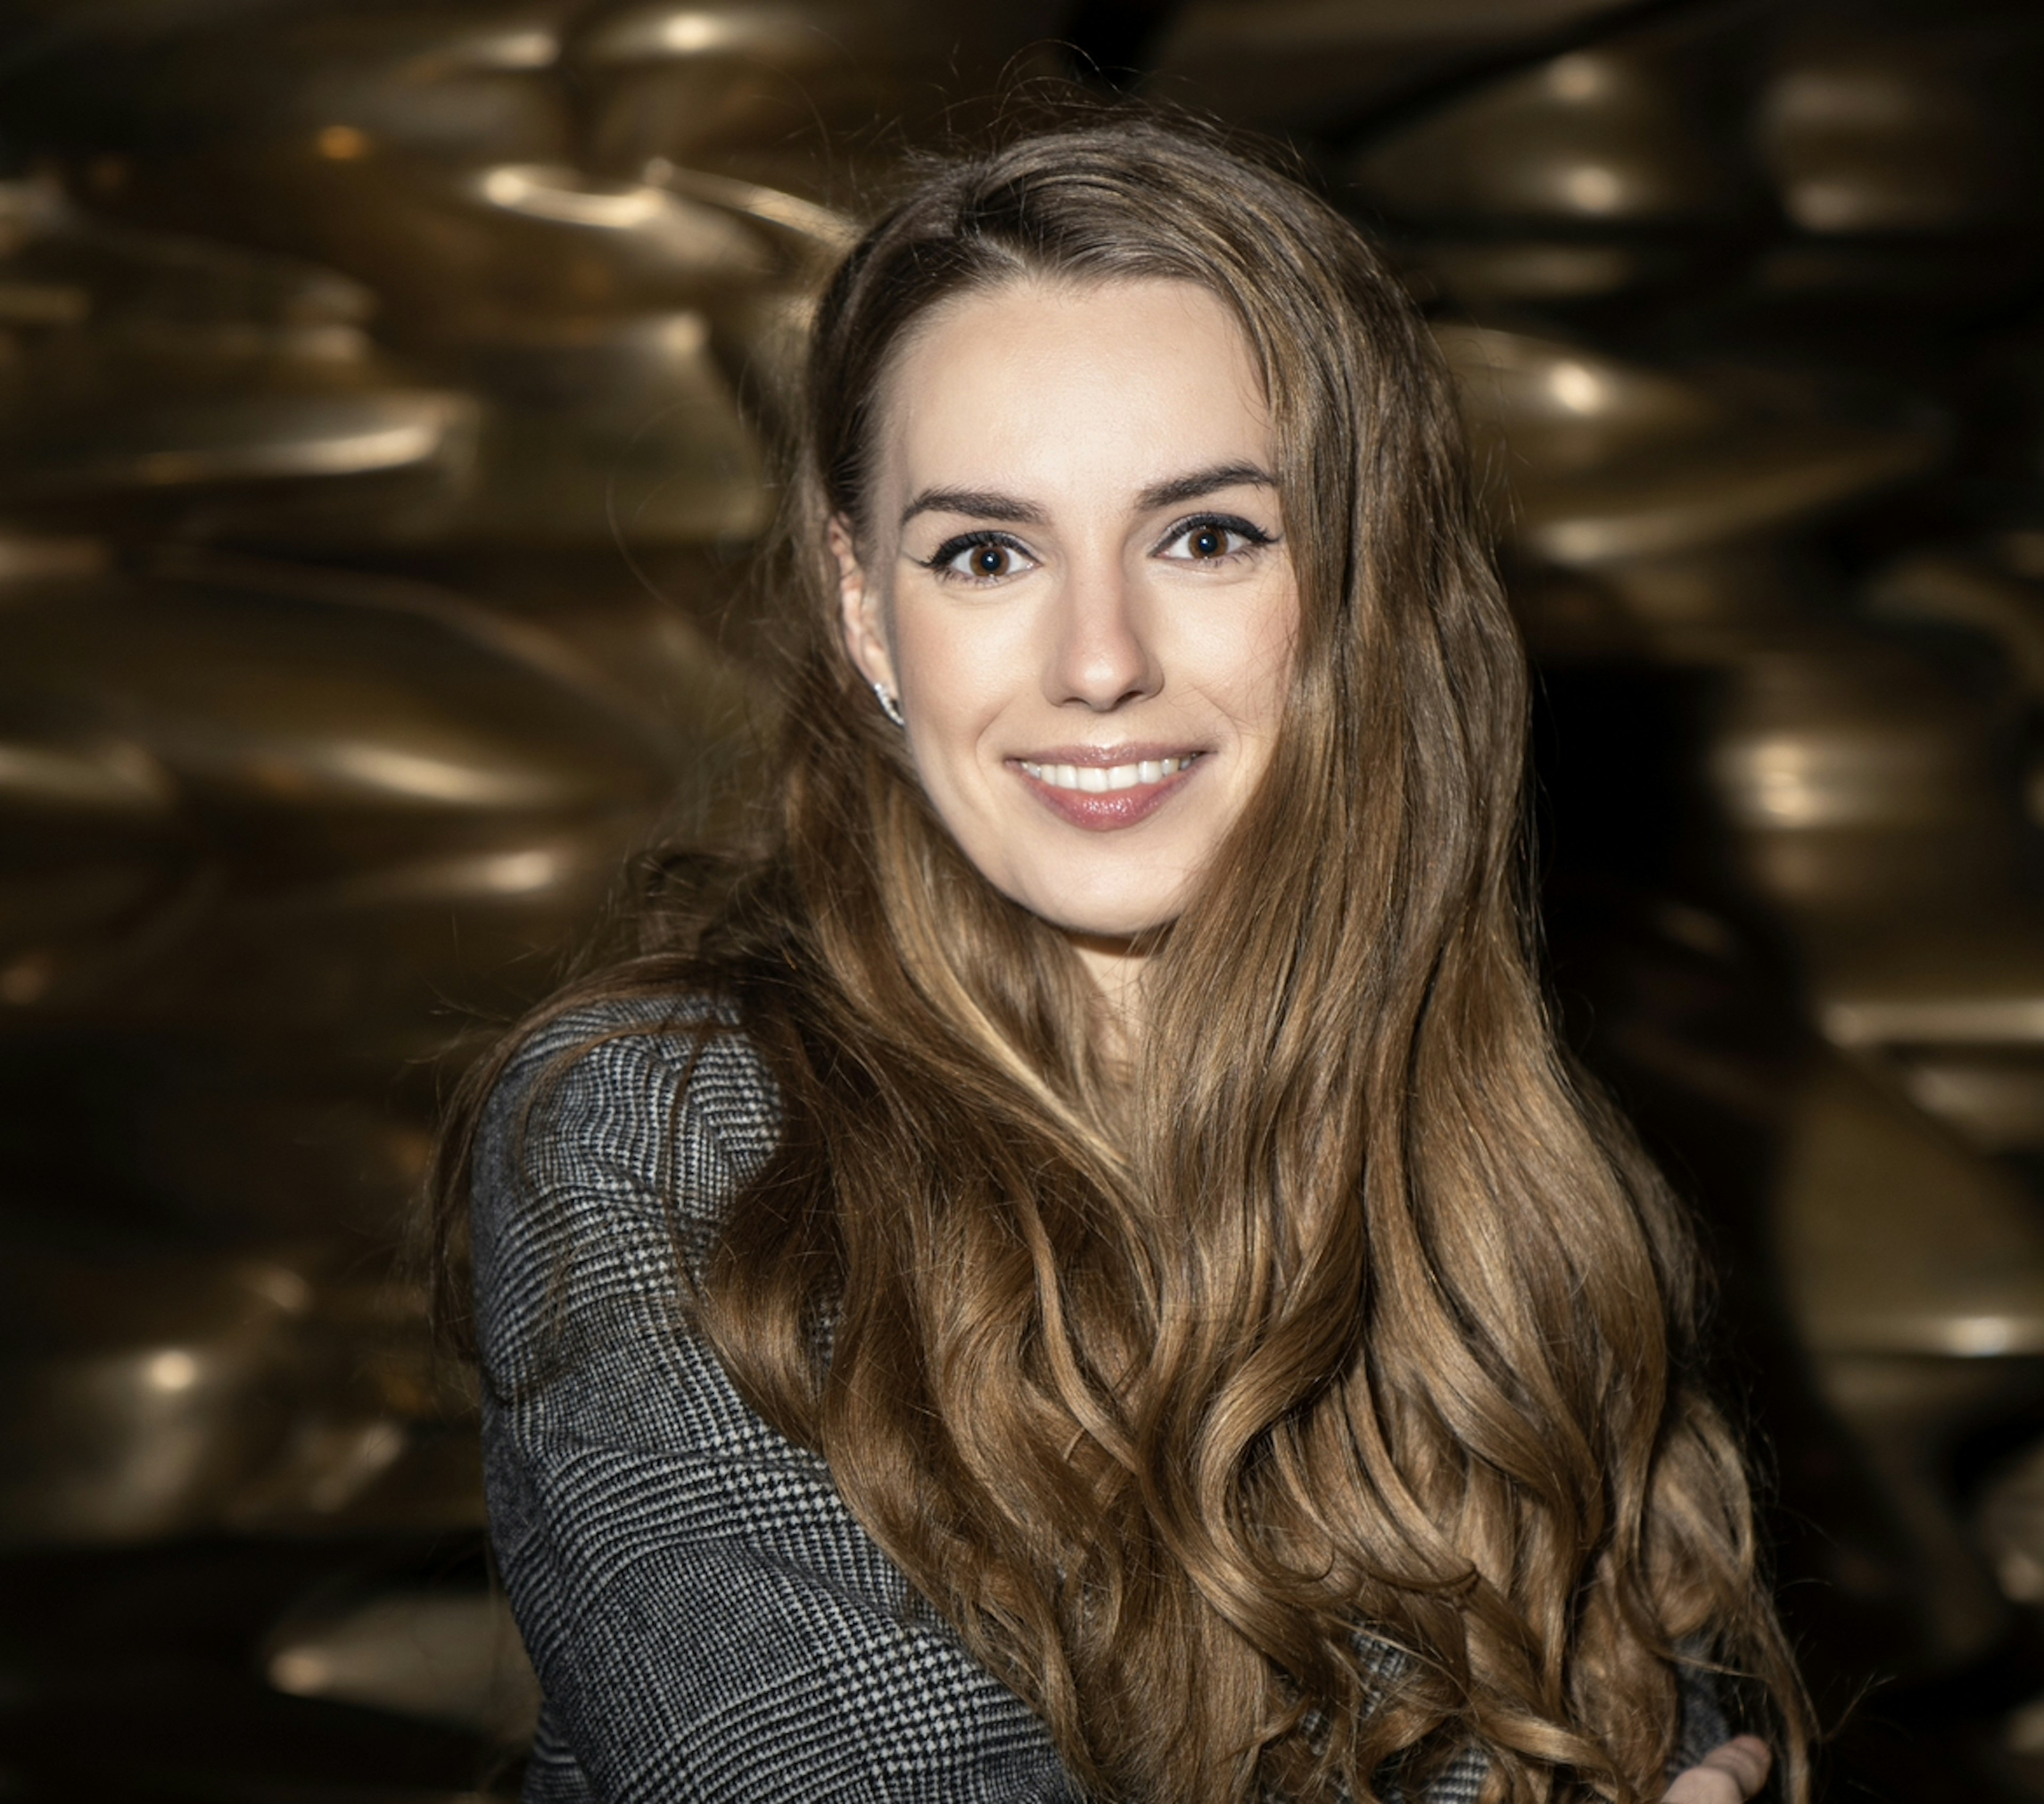 Picture of Daria Dmytrenko